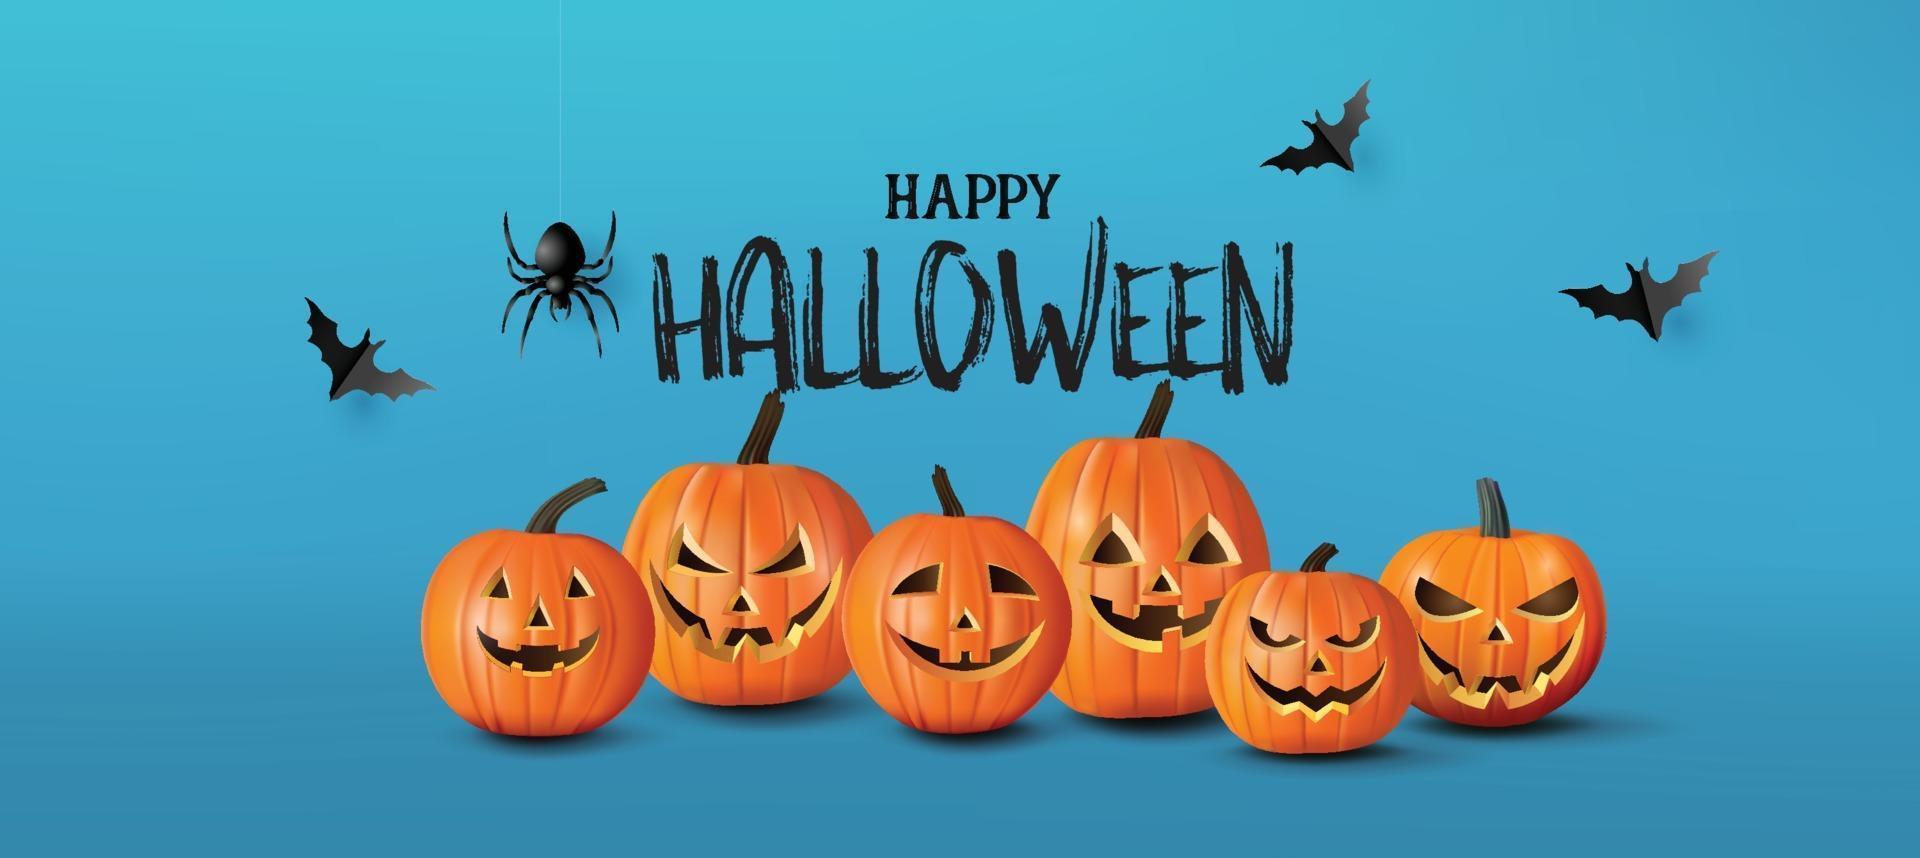 bannière de voeux joyeux halloween avec des citrouilles et des chauves-souris. style de papier découpé vecteur